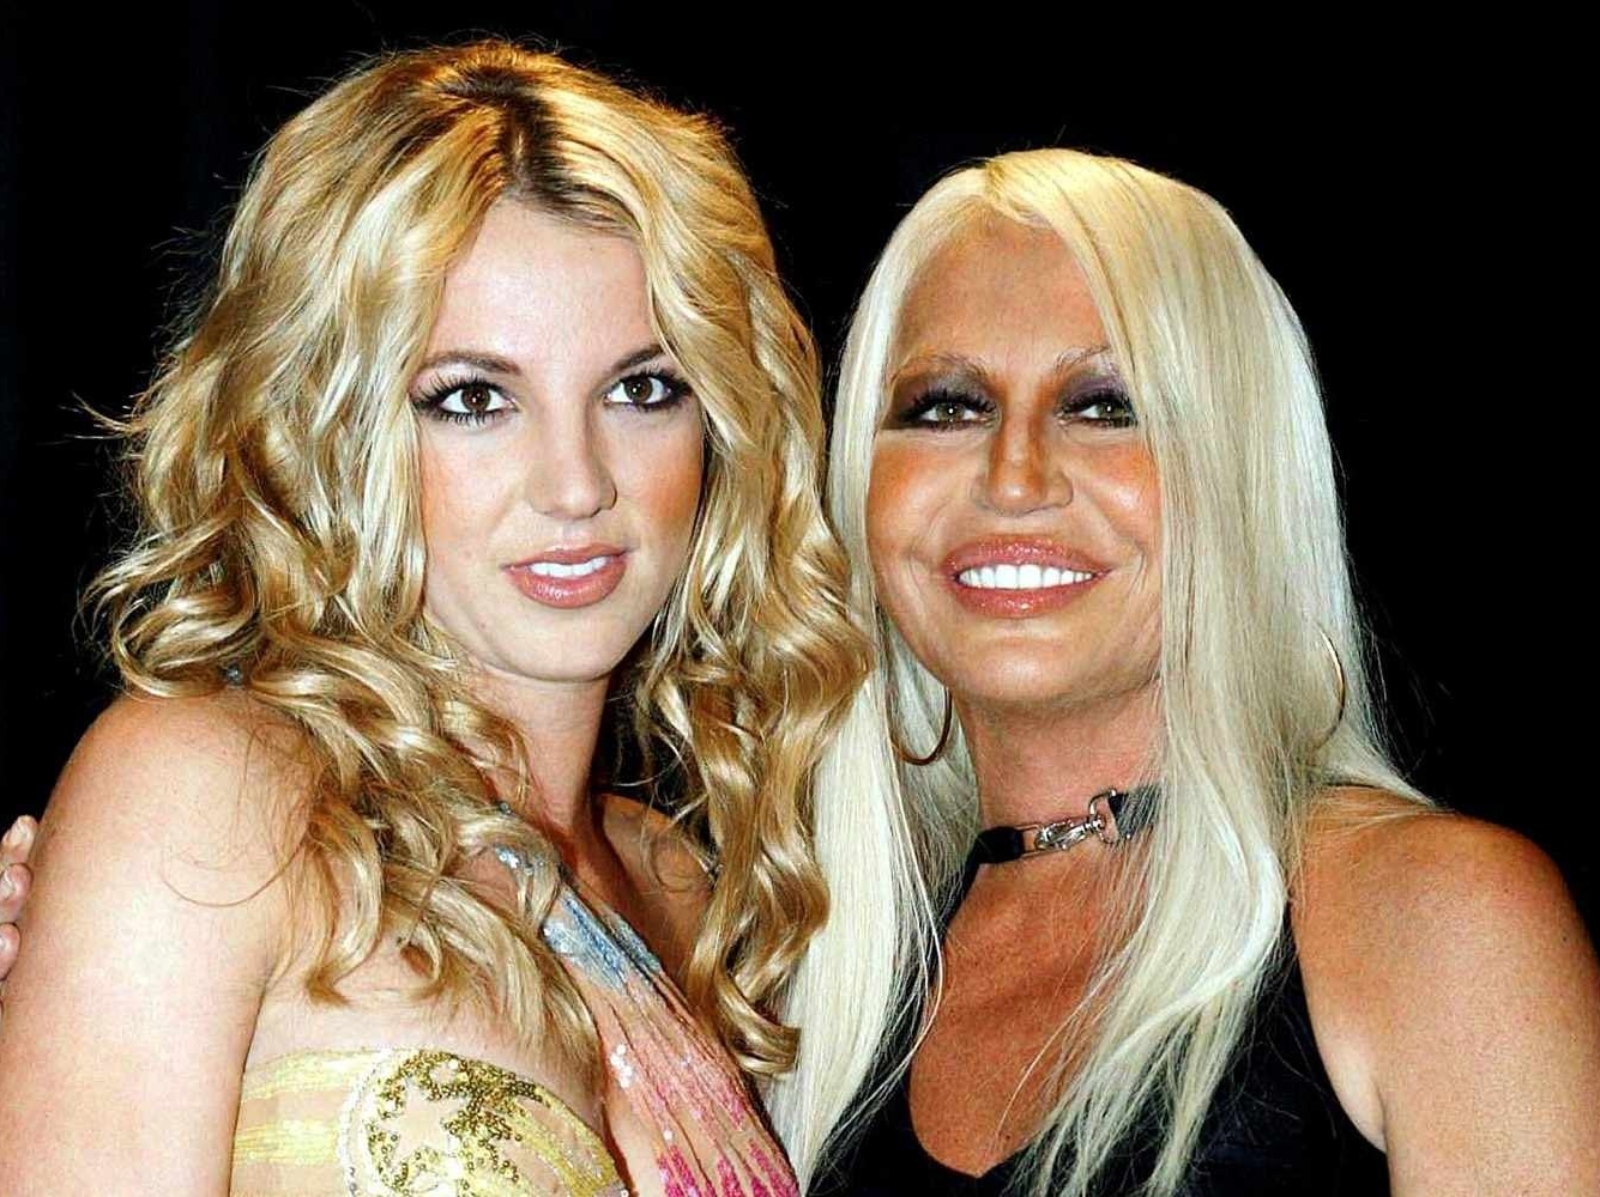 VERSACE 藝術總監 Donatella Versace 談設計小甜甜布蘭妮 Britney Spears 婚紗內幕：「小甜甜想穿什麼就穿什麼！」